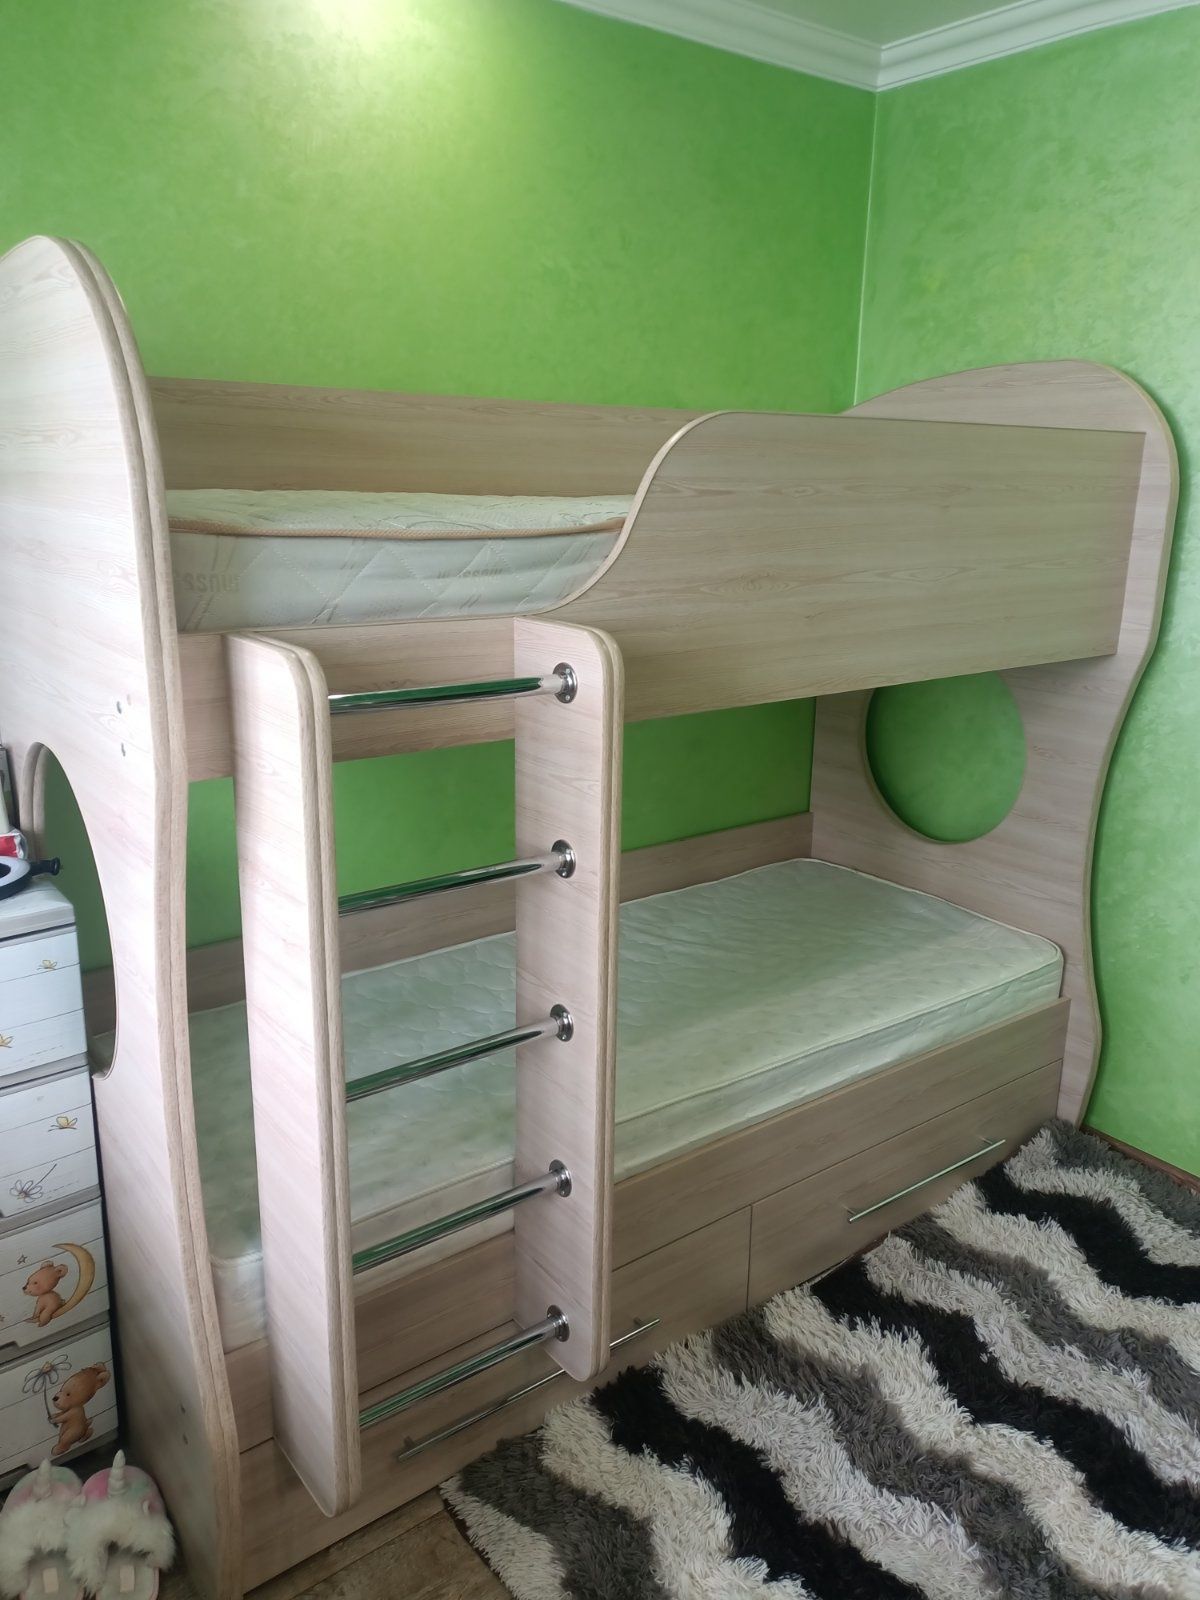 Дитяче двоярусне ліжко